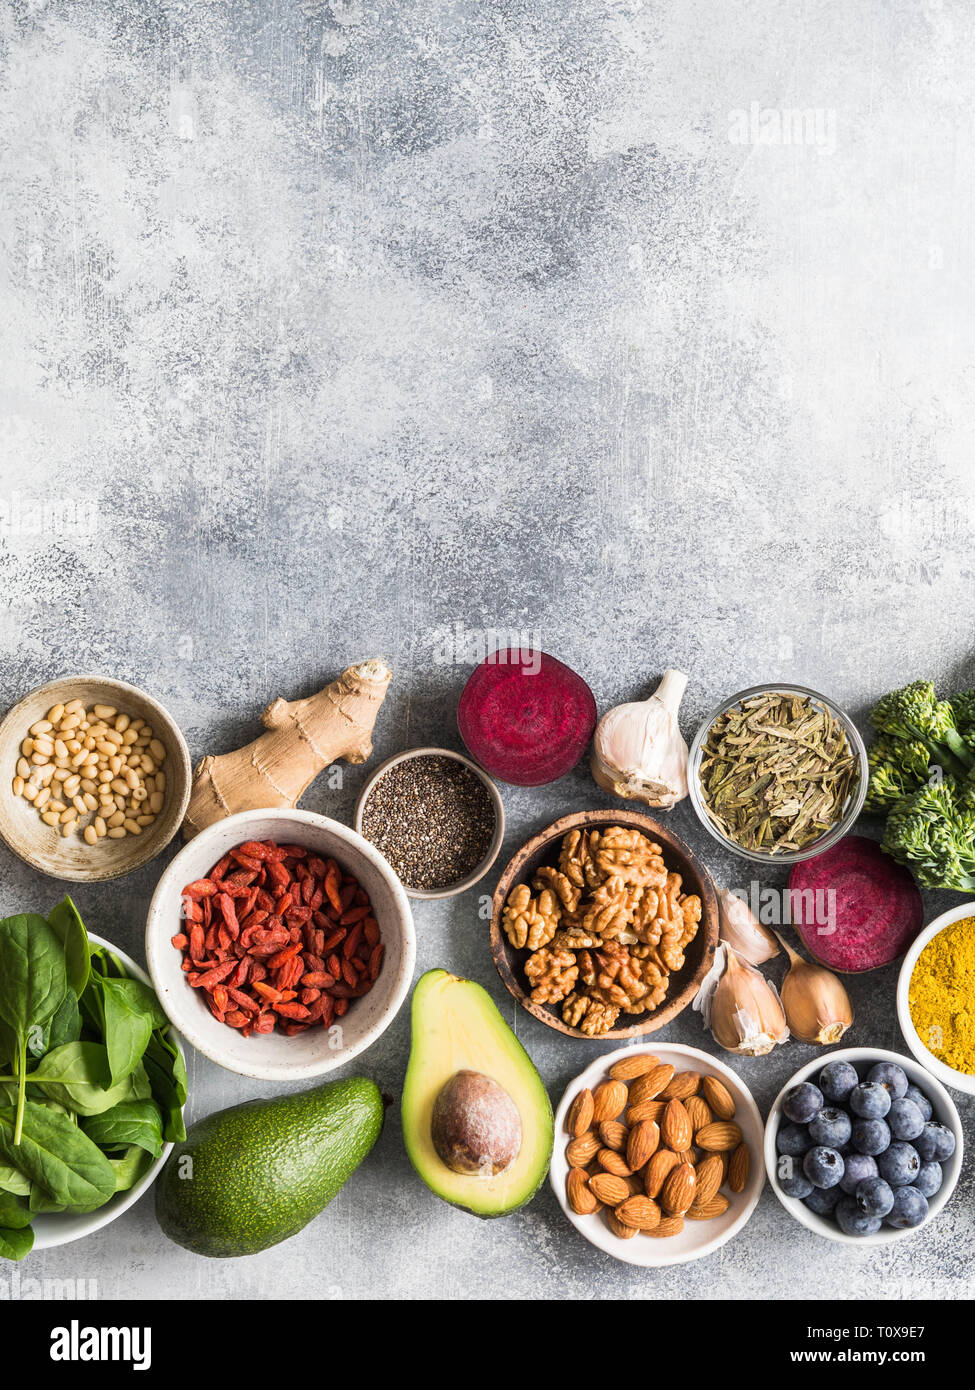 Gesunde, saubere Lebensmittel - Gemüse, Früchte, Nüsse, superfoods auf grauem Hintergrund. Gesunde Ernährung Konzept. Stockfoto